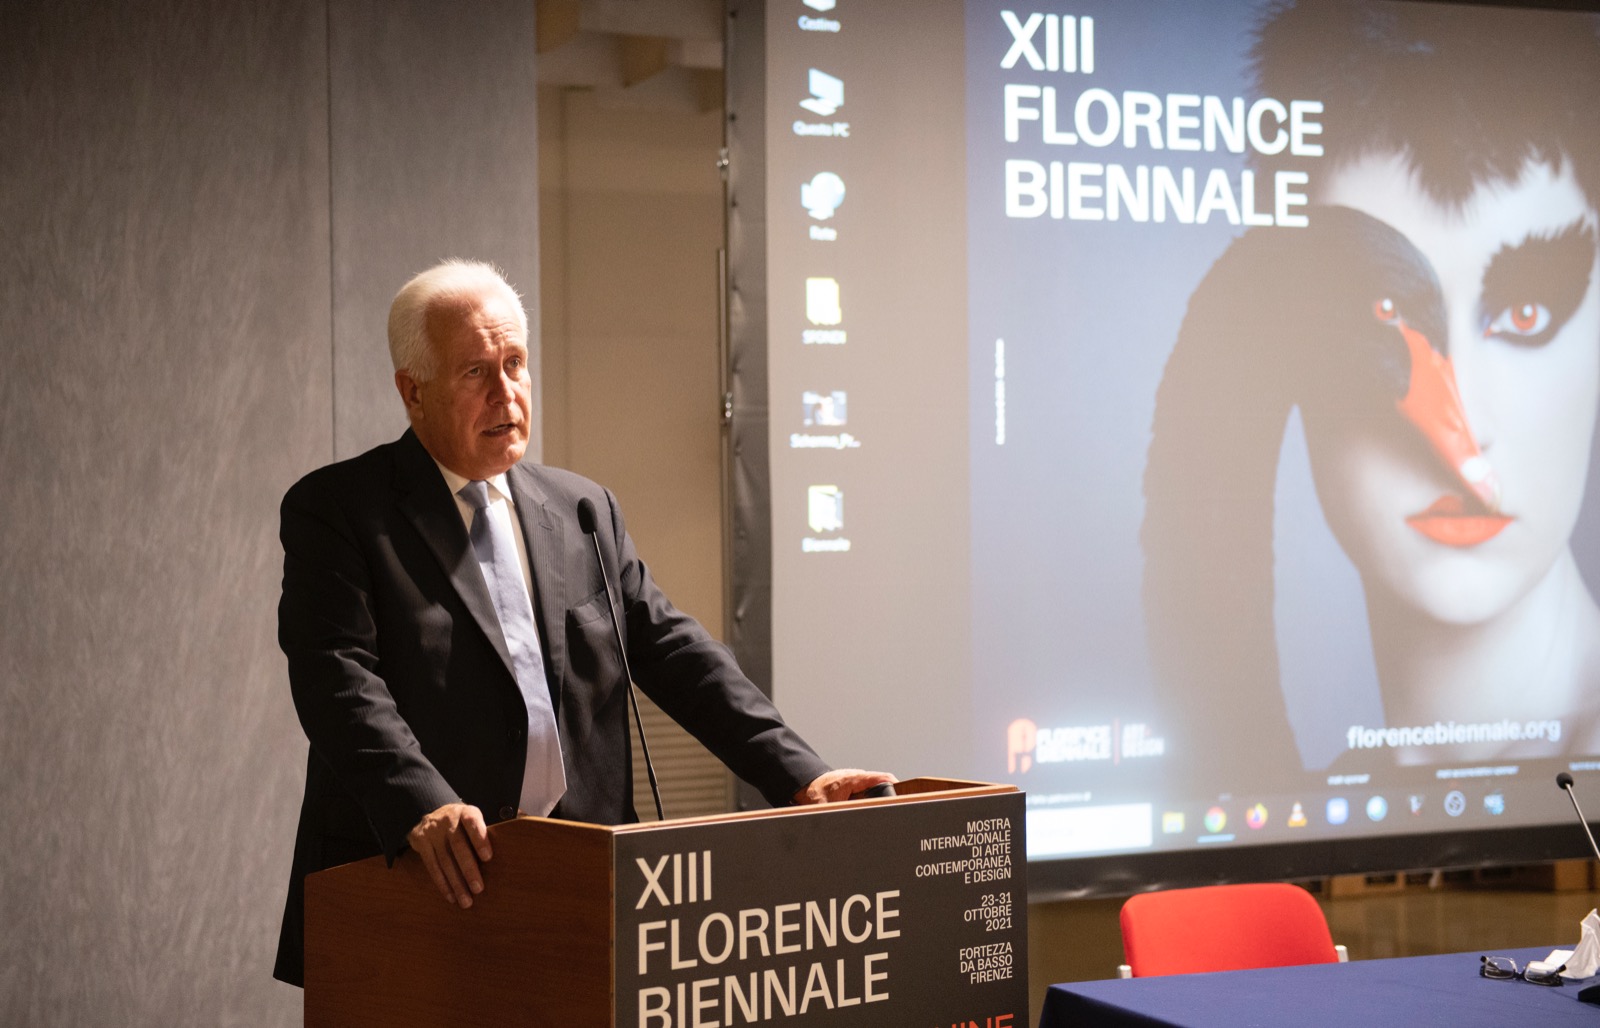 Florence Biennale, Giani all’inaugurazione: “Manifestazione di altissimo livello”